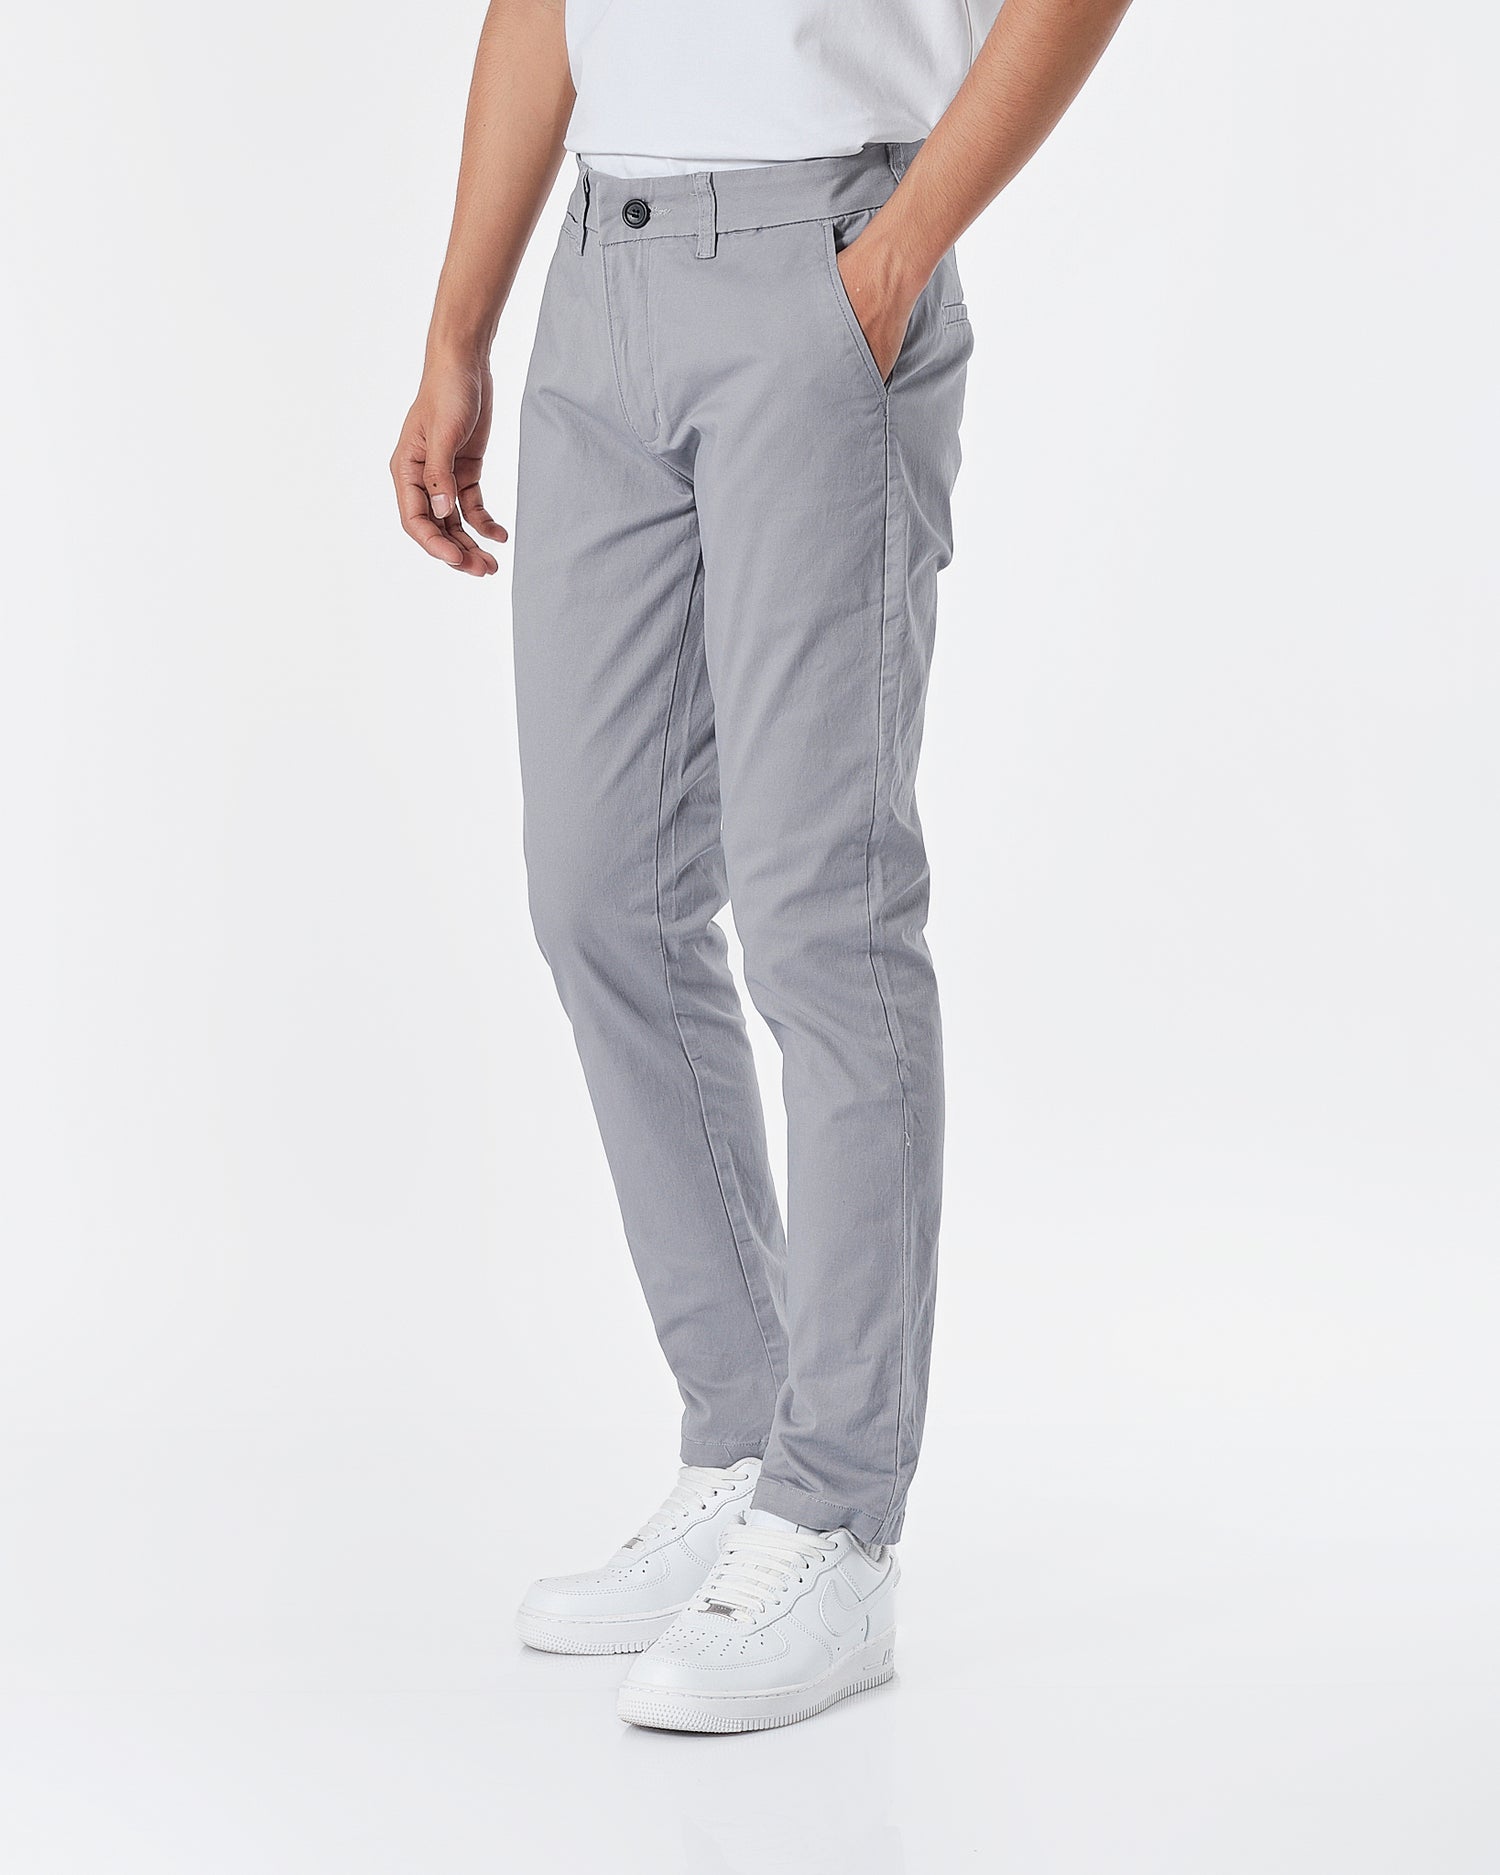 LAC Plain Color Men Grey Khaki Pants 22.90